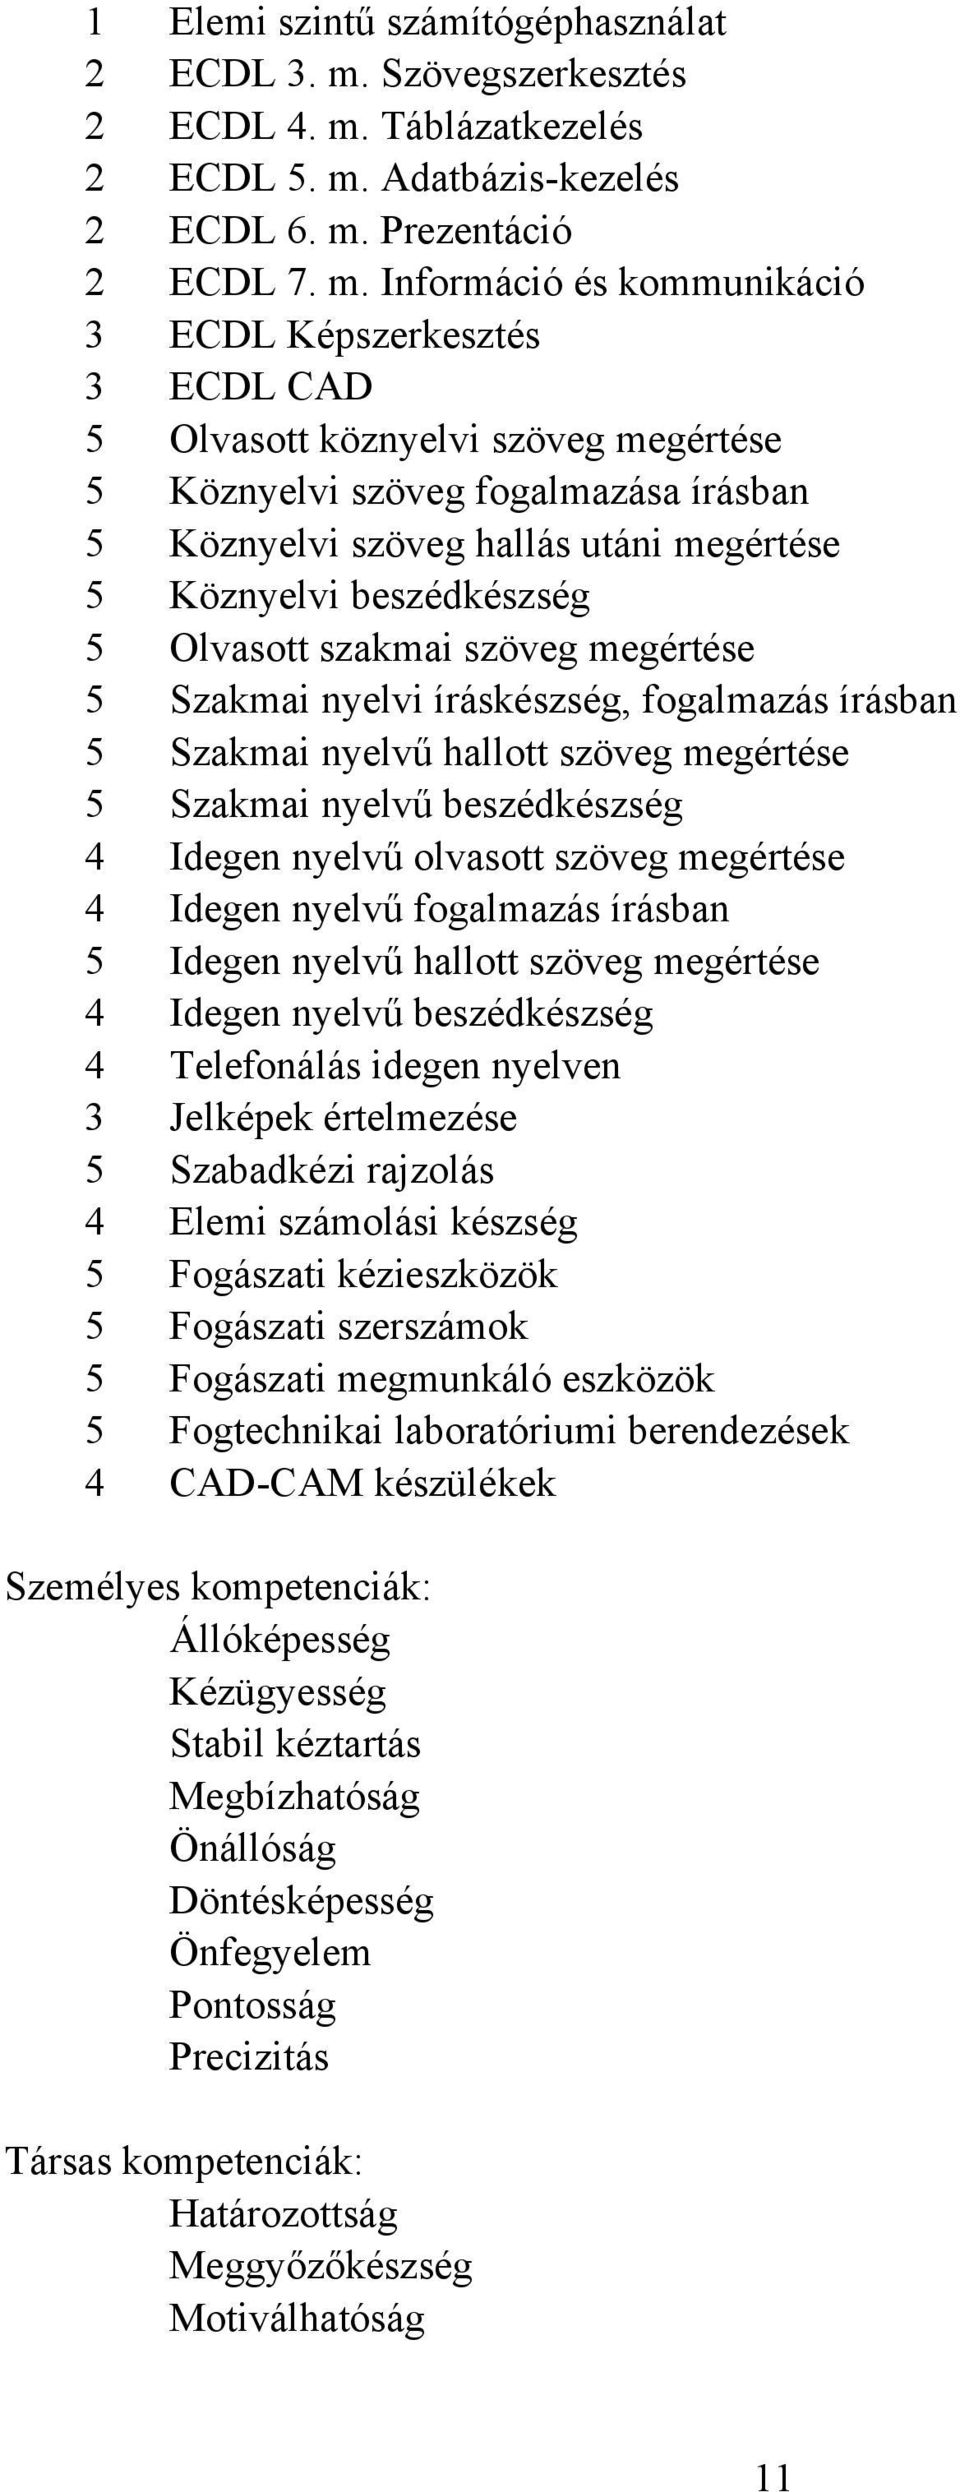 Táblázatkezelés 2 ECDL 5. m.